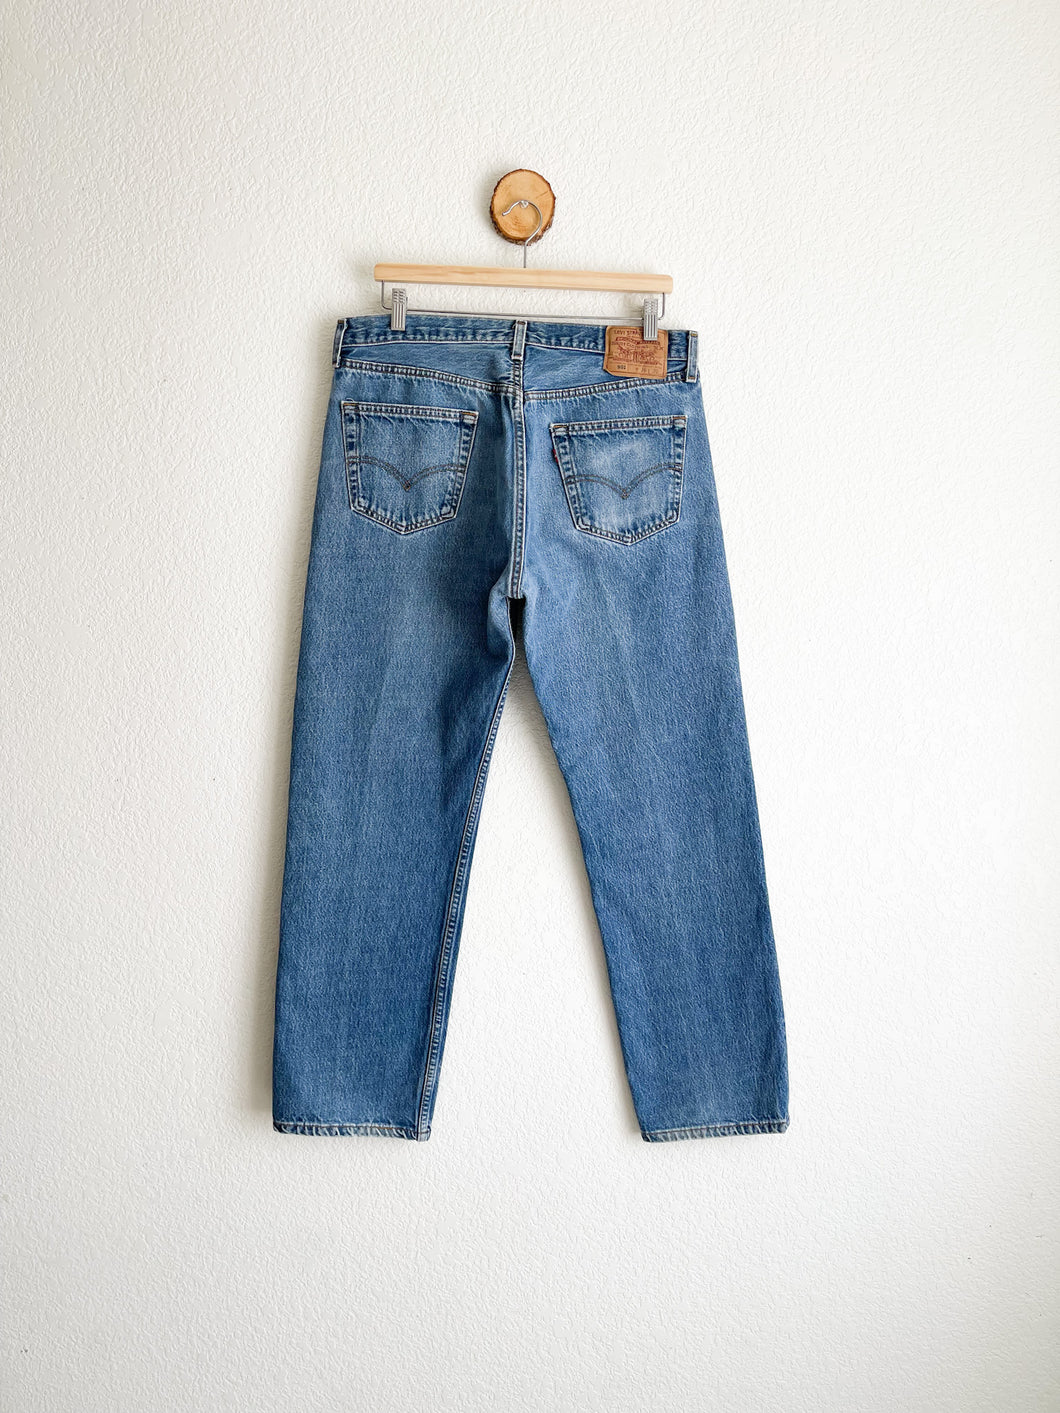 Vintage Levi's 501 Jeans - 34